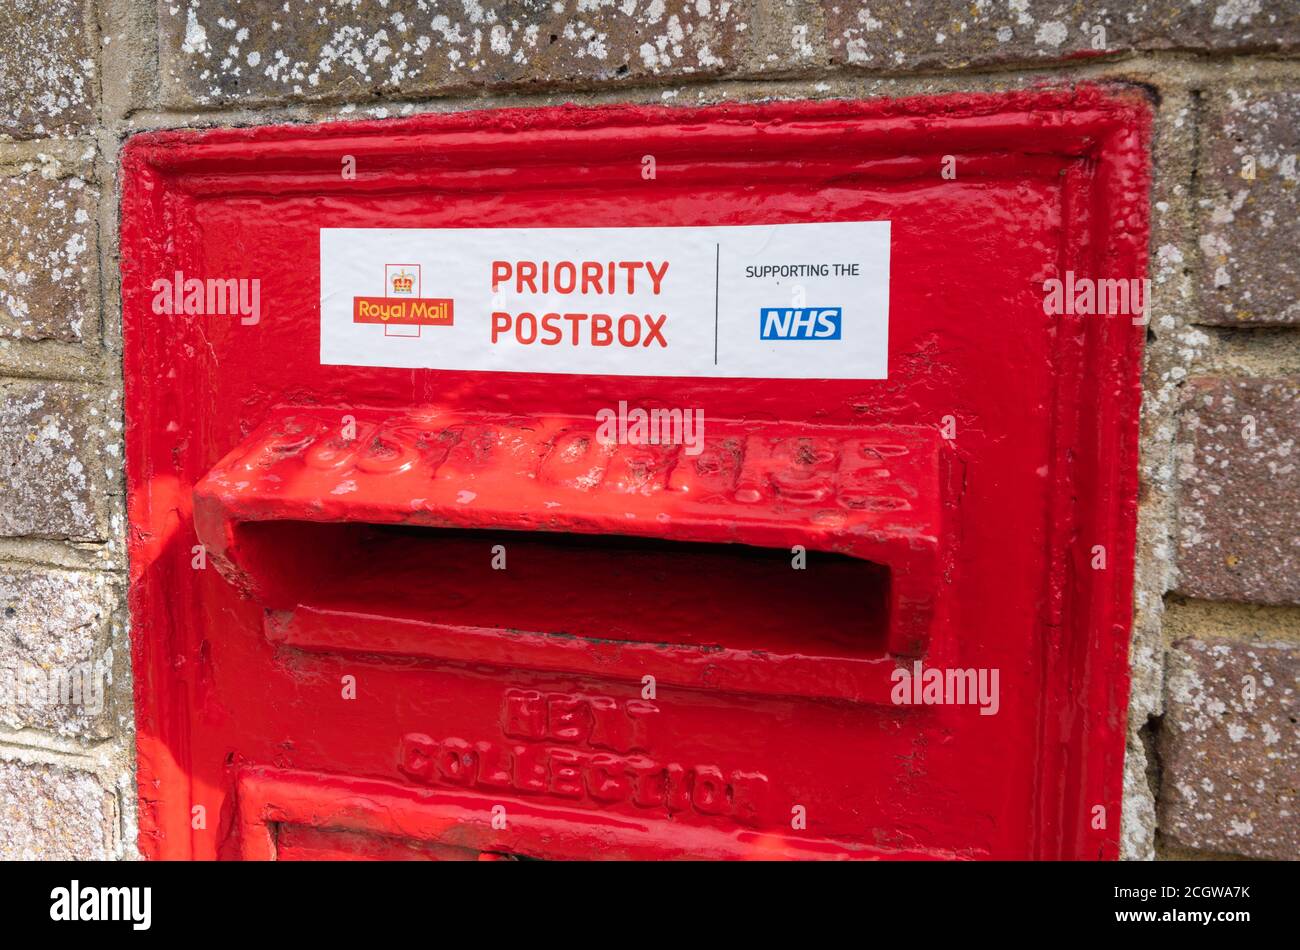 Priority Postbox, eine rote Royal Mail an der Wand montierte Postbox (Postbox, Briefkasten, Briefkasten, Briefkasten) während der COVID19 Coronavirus Pandemie in England, Großbritannien. Stockfoto